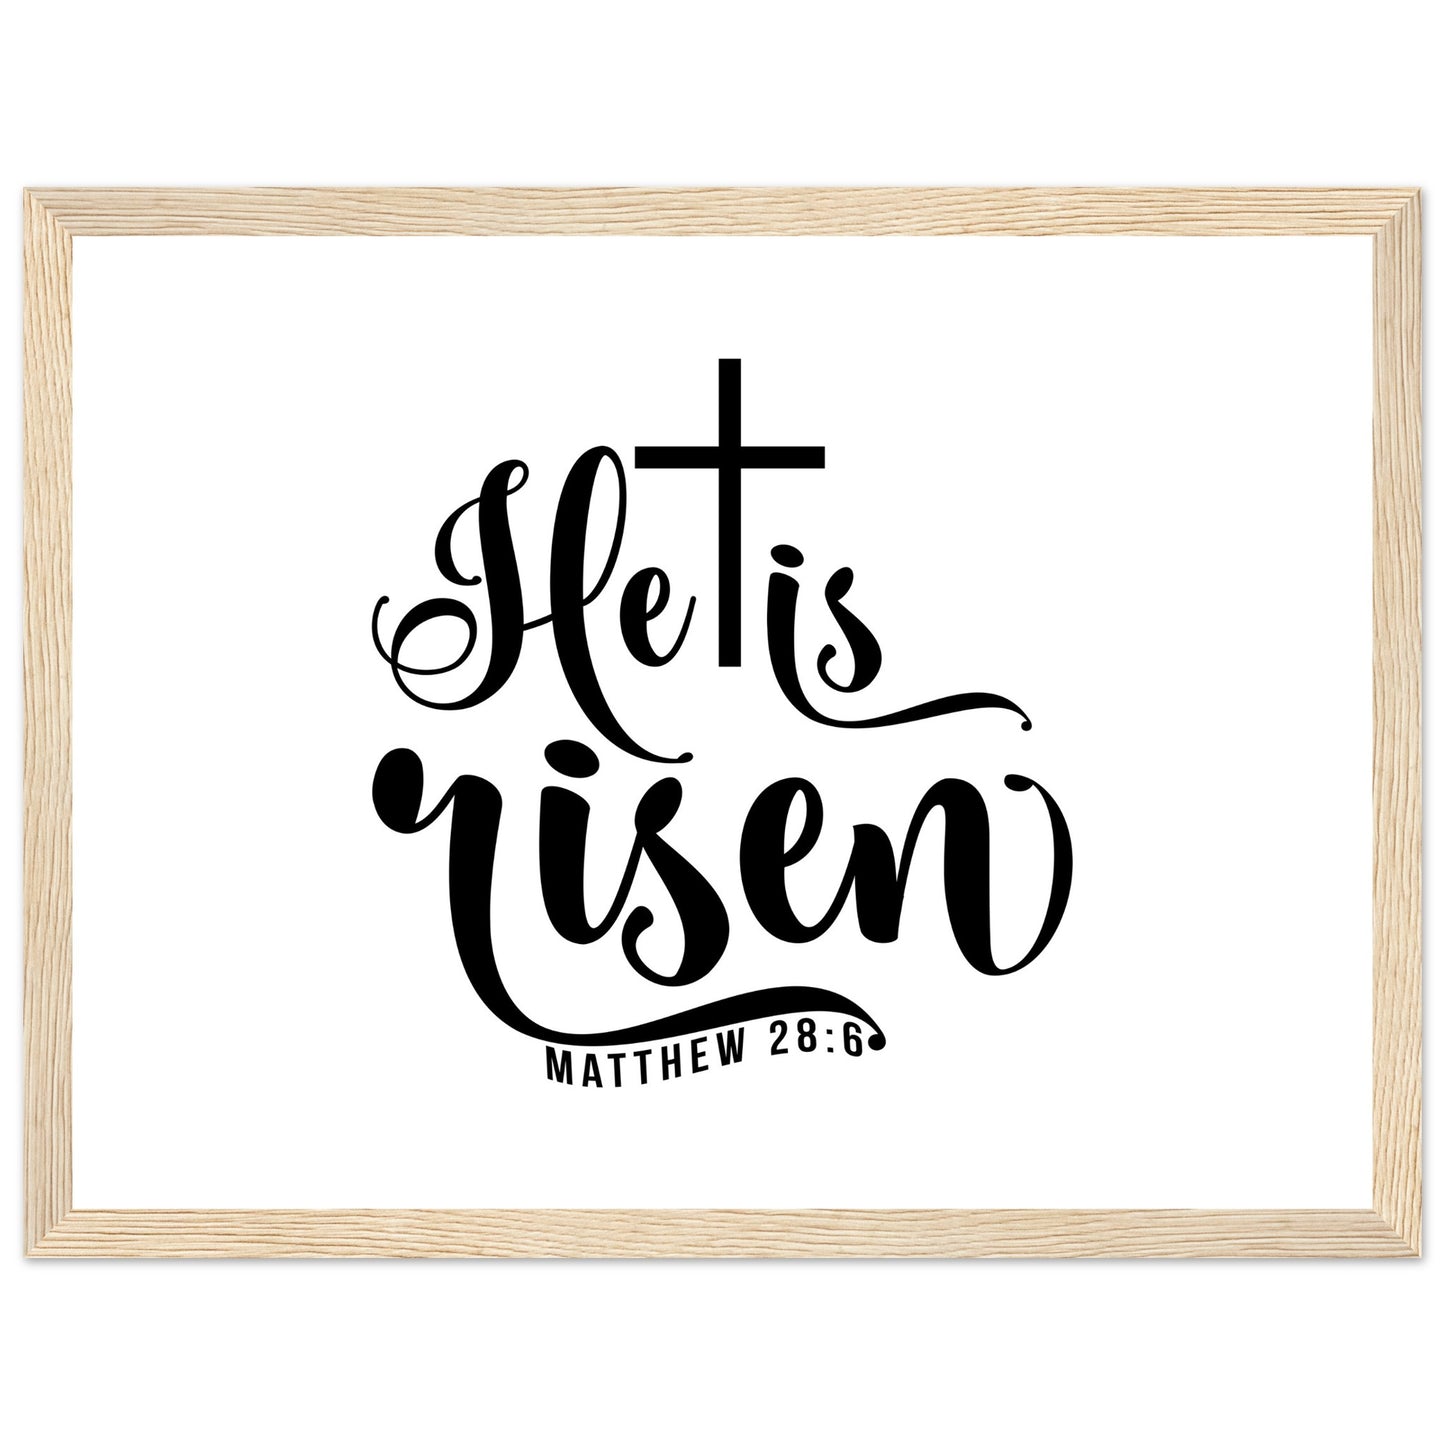 He is Risen (Matthew 20:6) - Premium Matte Paper Wooden Framed Poster